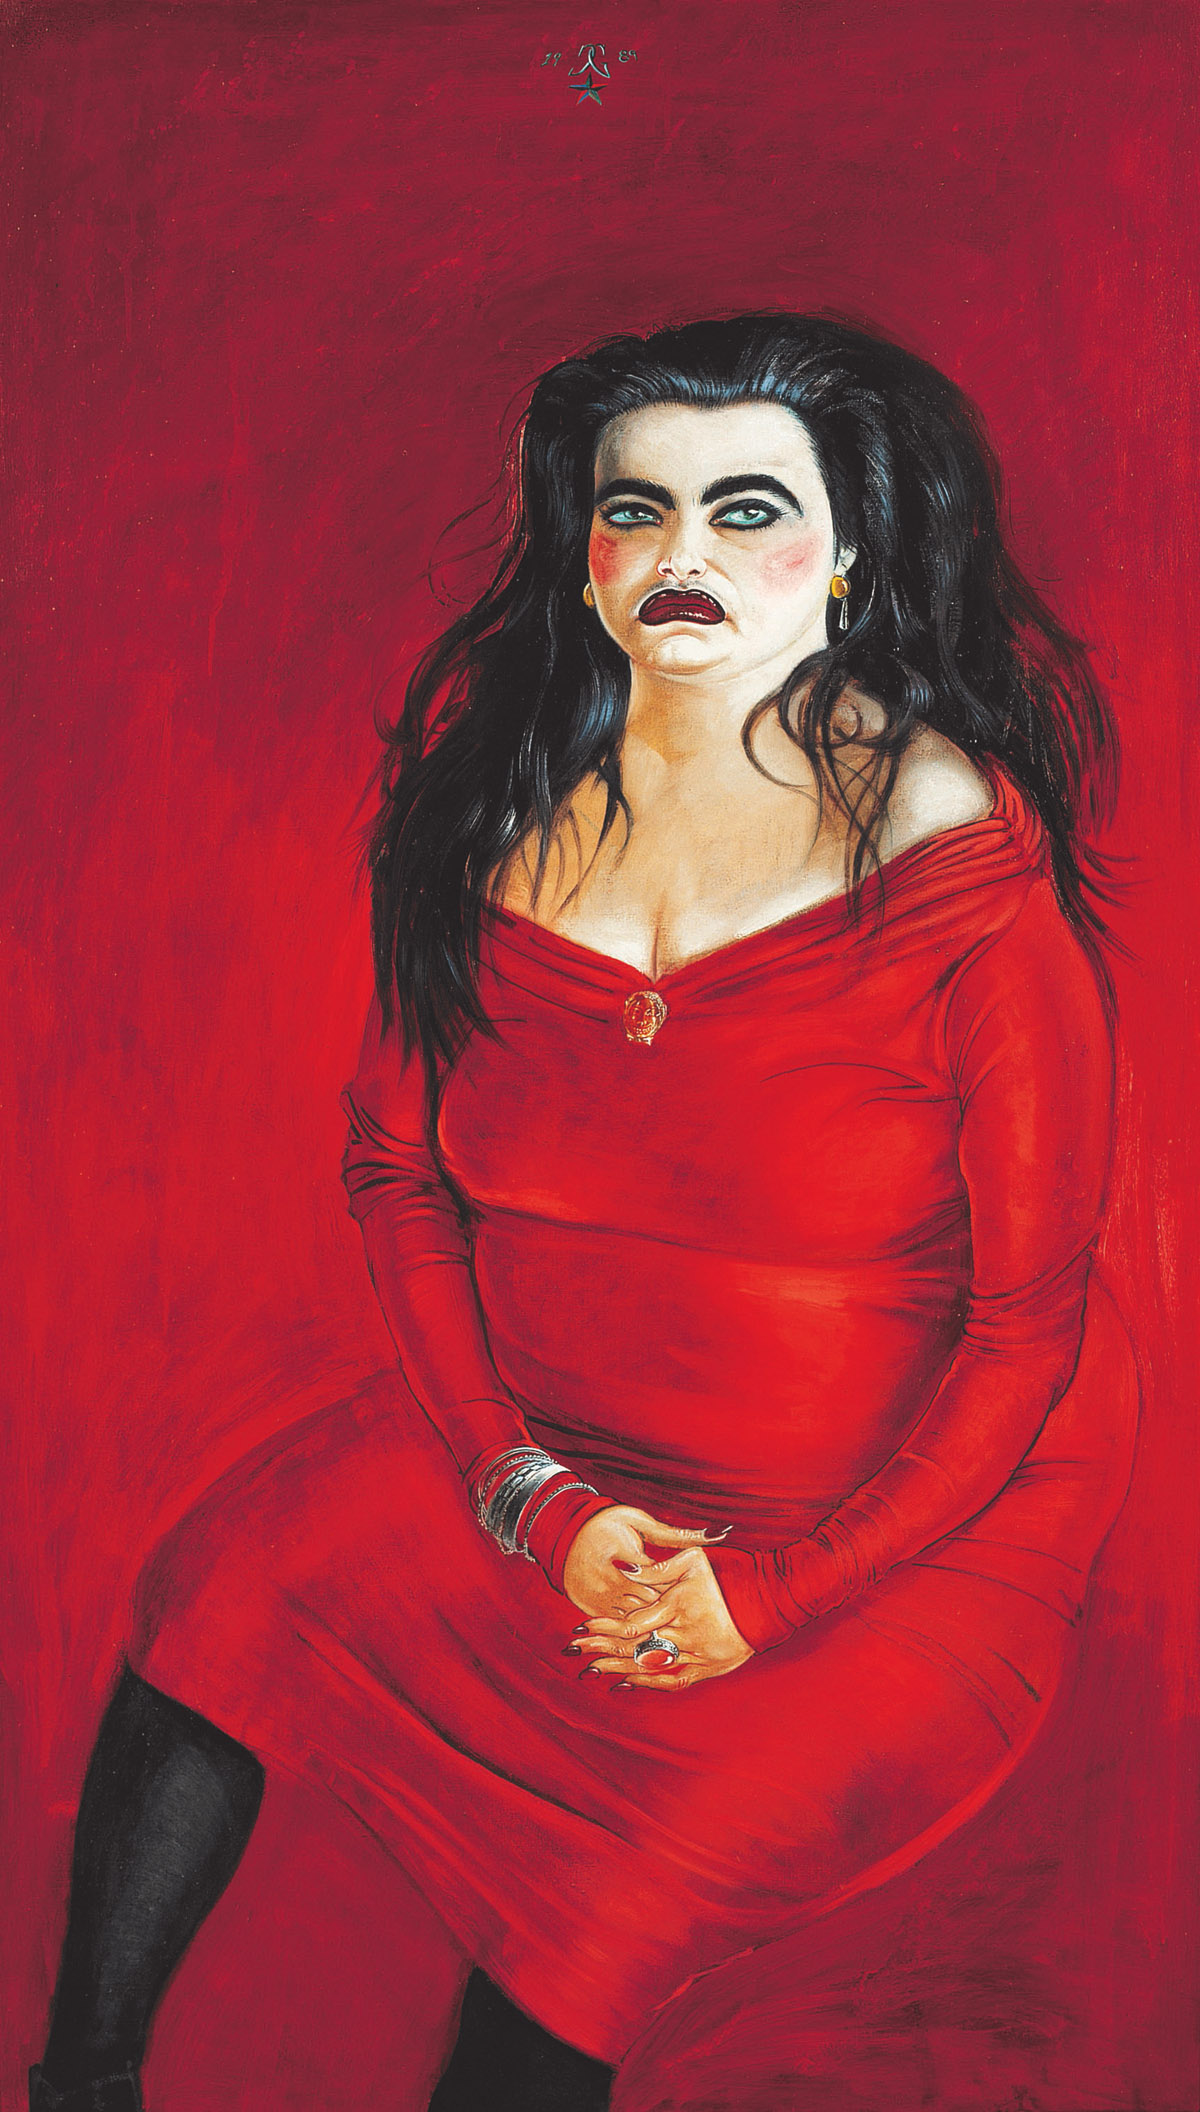 Clemens Gröszer, Ines im roten Kleid, 1989, Mischtechnik auf Leinwand